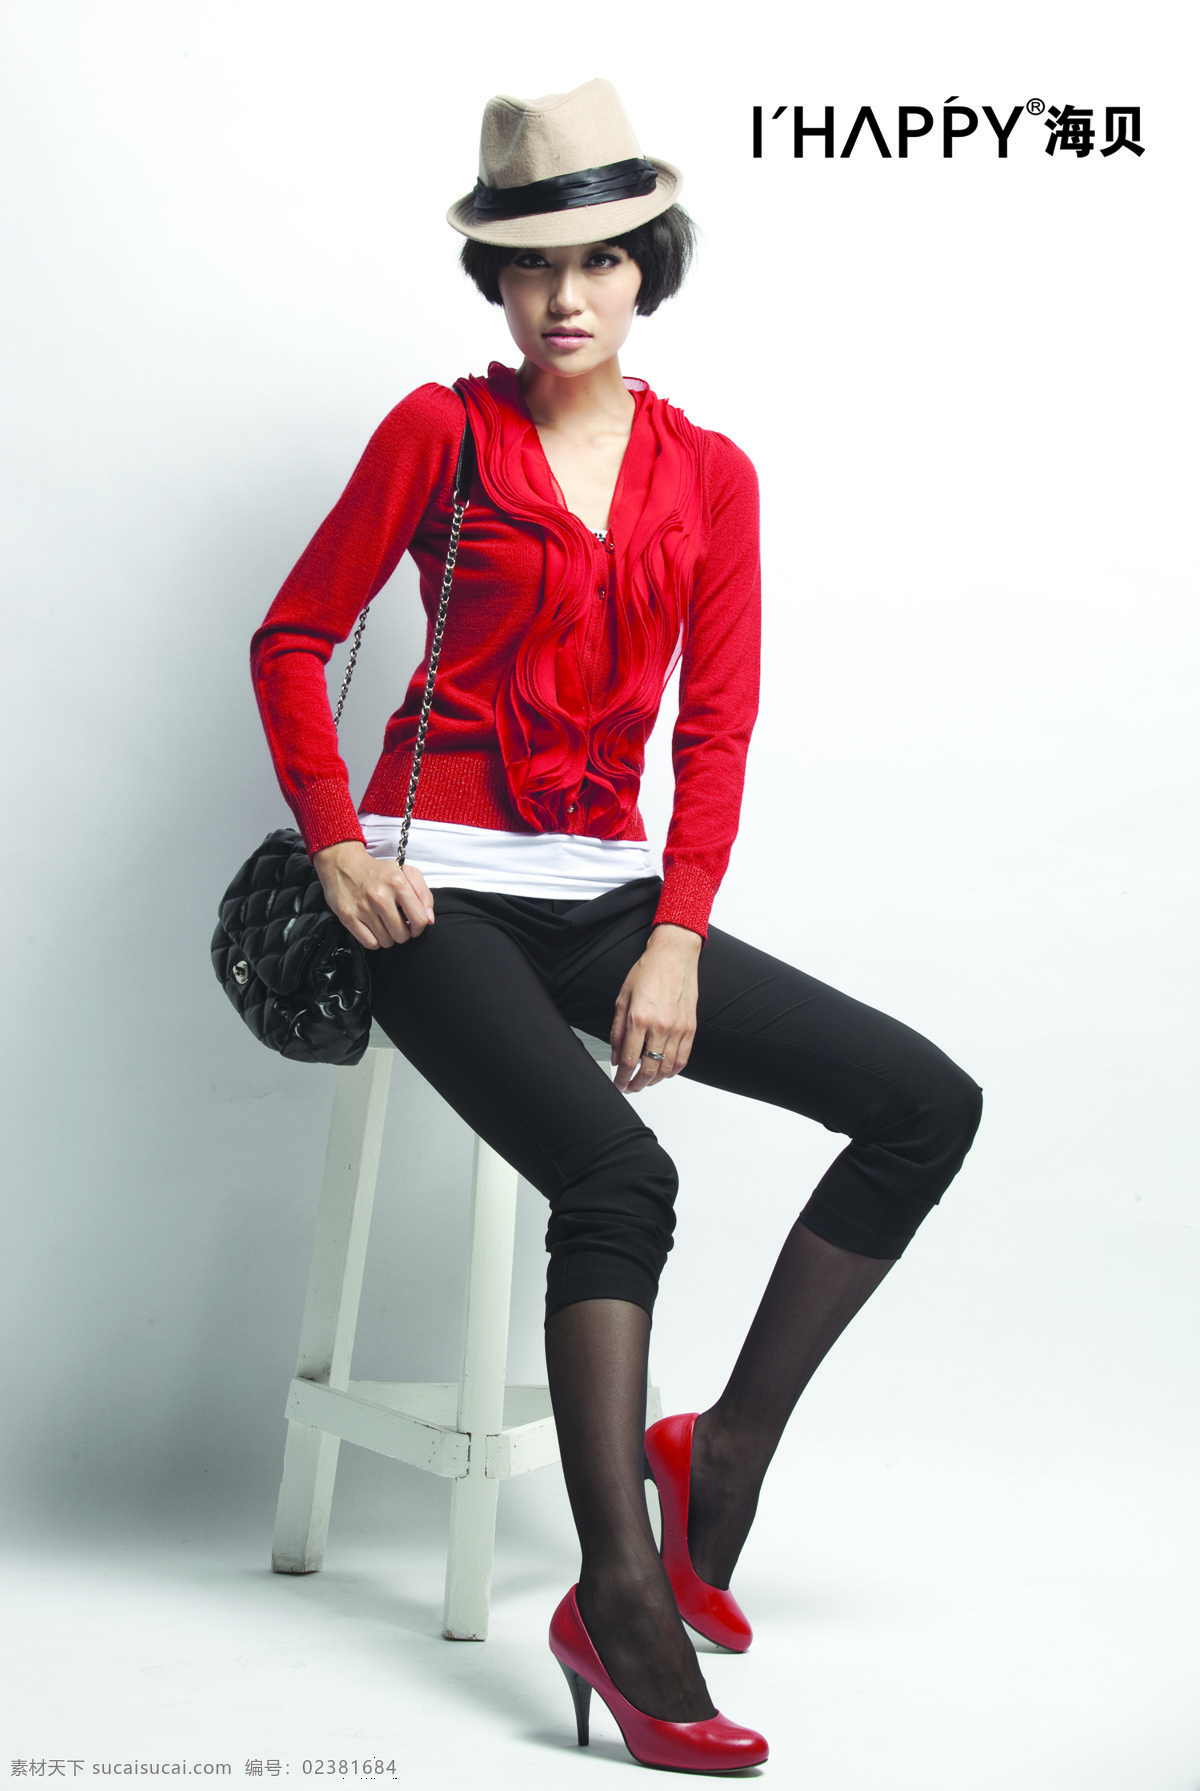 美女图片 美女 女性女人 人物图库 秋季 品牌女装 新品上市 红色外套 黑色裤子 戴帽子 psd源文件